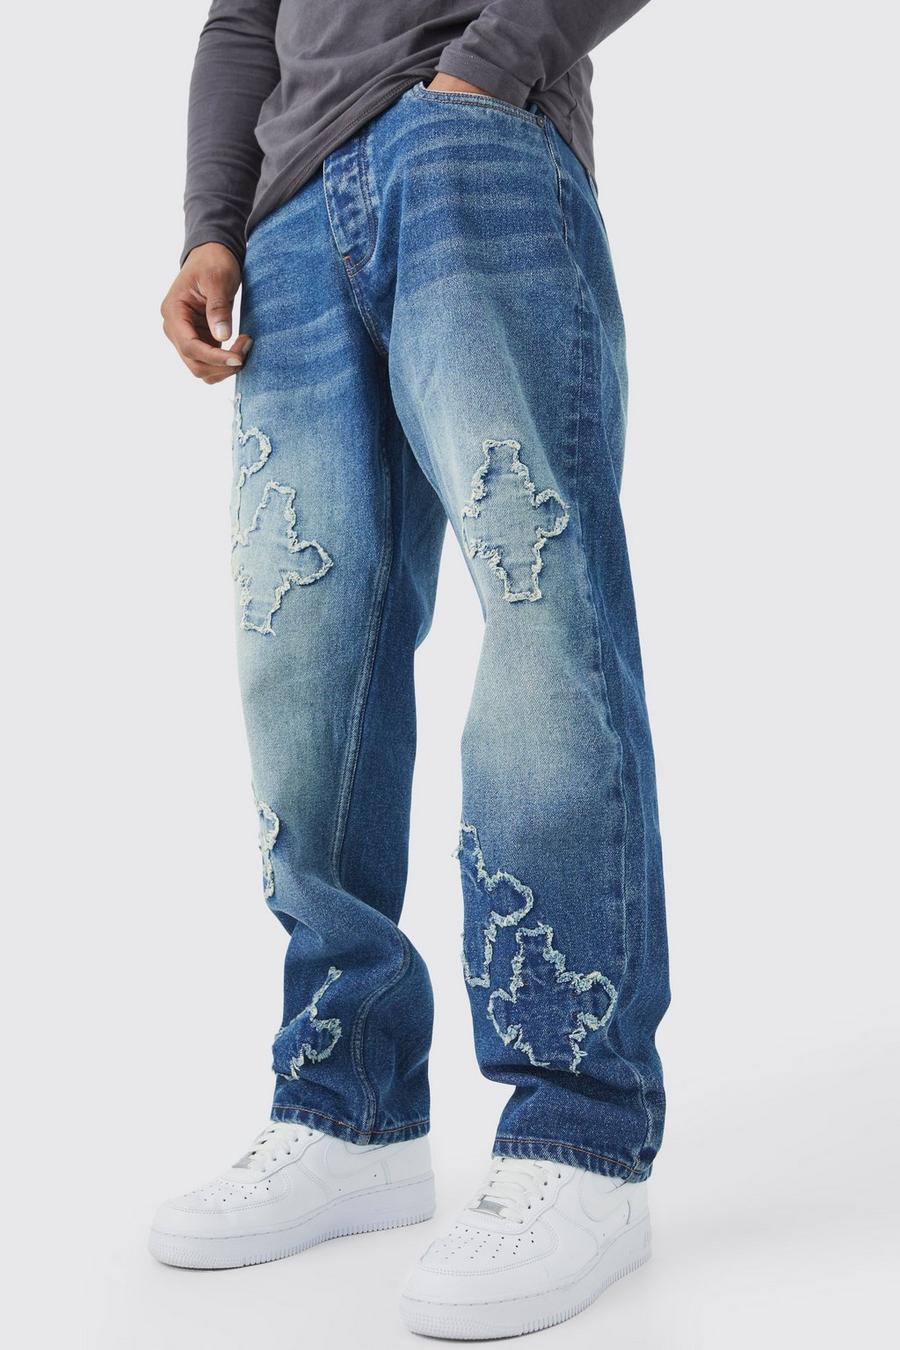 Lockere Jeans mit rohem Saum und Kreuz-Applikation, Antique wash image number 1